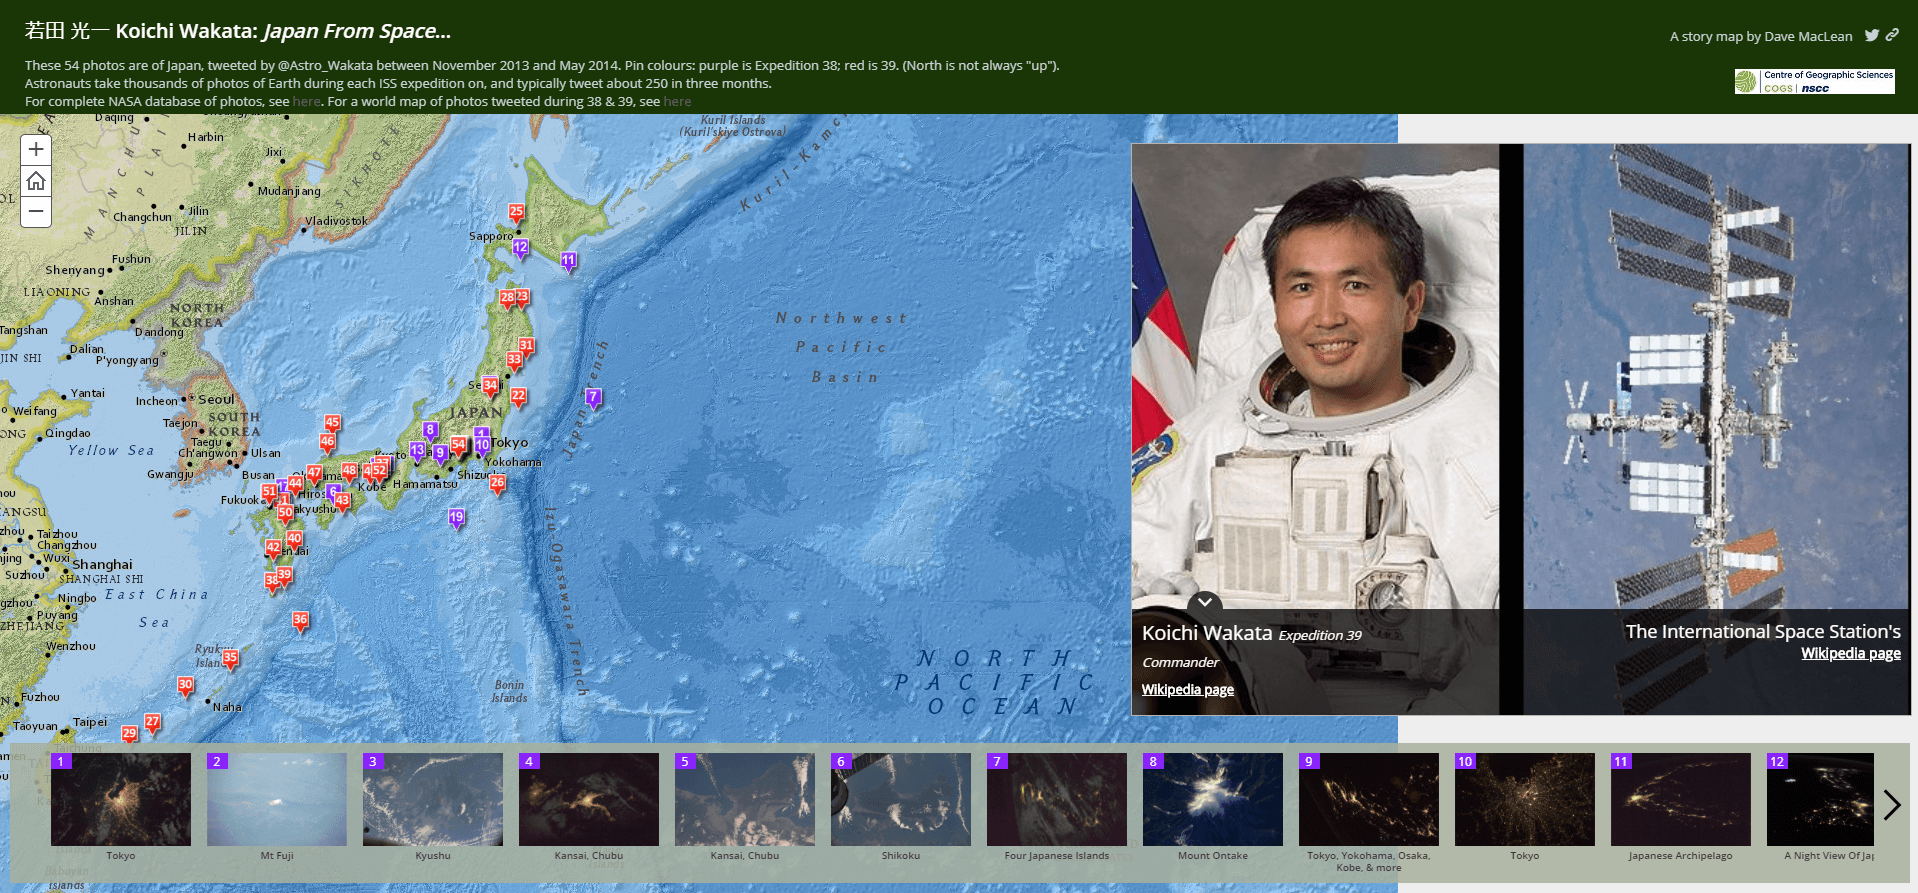 Koichi Wakata’s Japan From Space